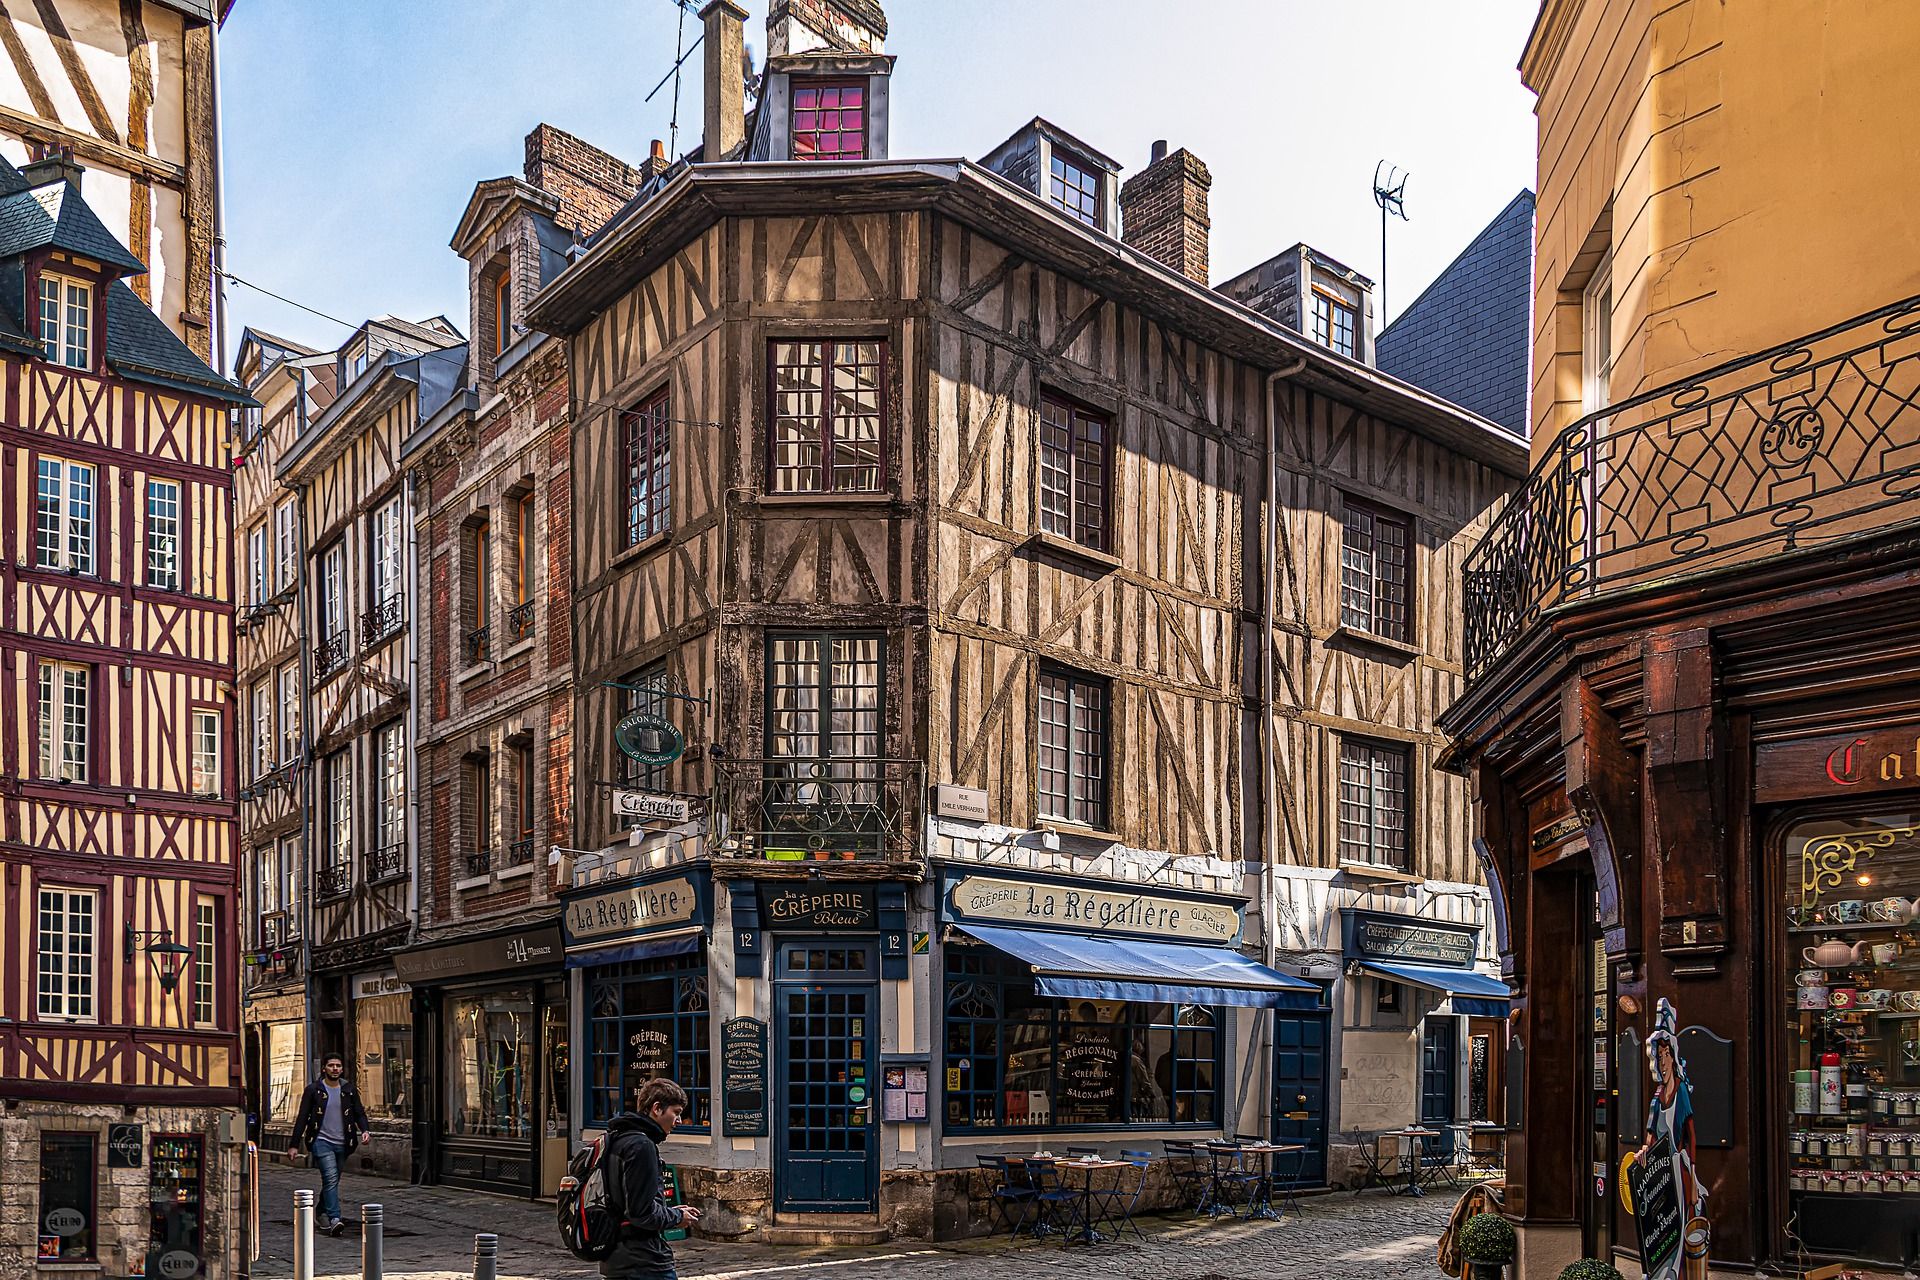 Maisons à colombages dans la ville de Rouen